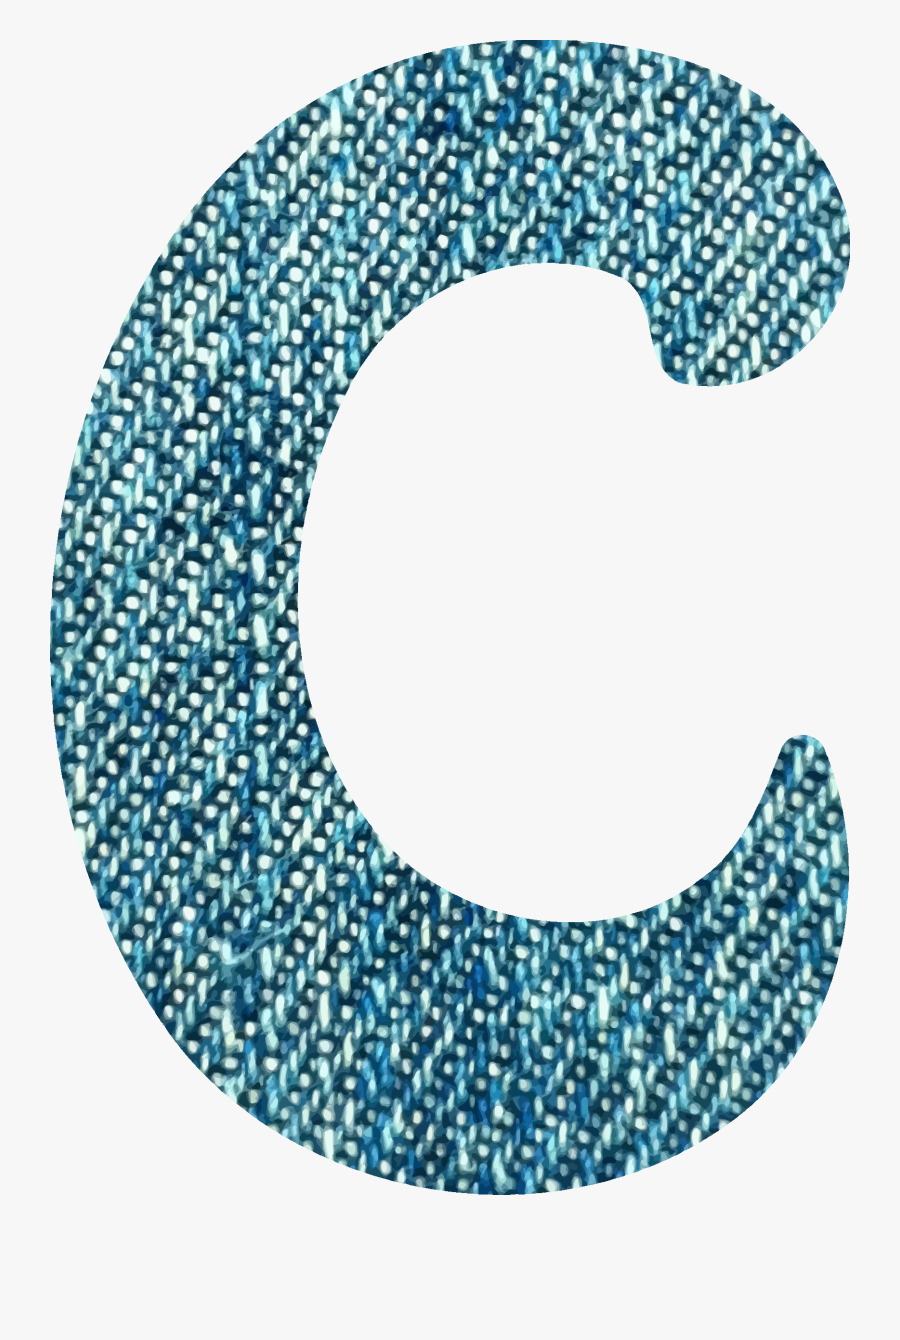 Denim Alphabet, C Clip Arts - Small Letter C Clipart Png, Transparent Clipart